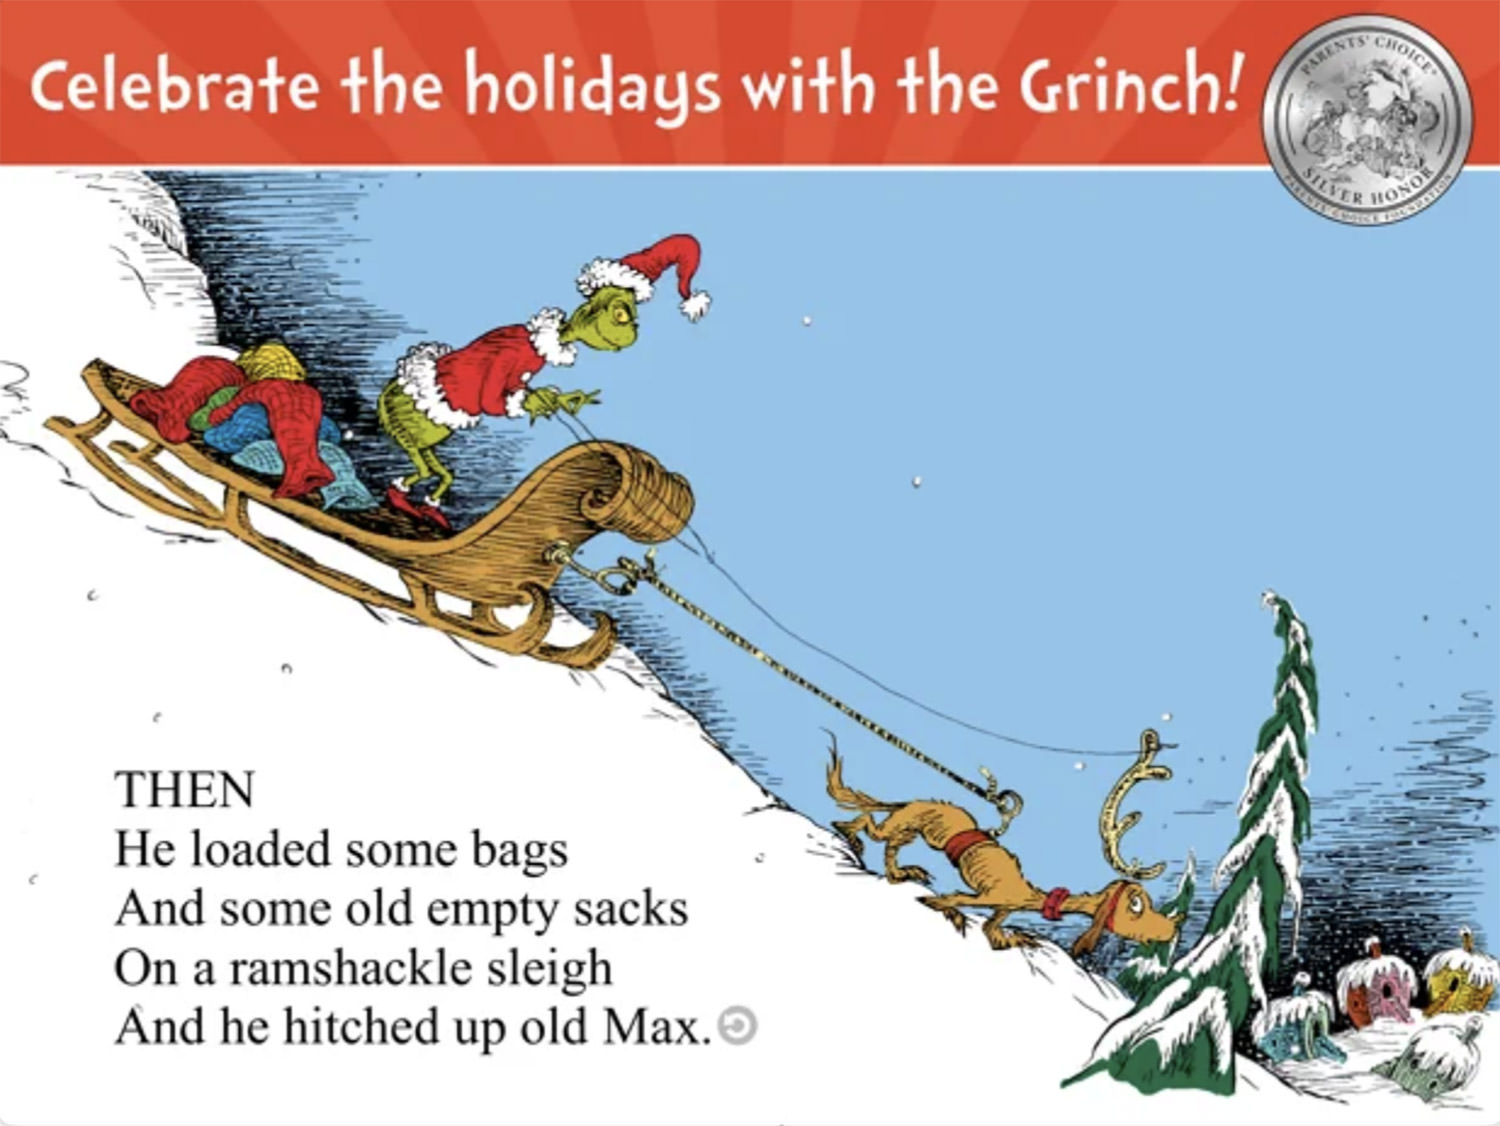 Como el Grinch robó la Navidad